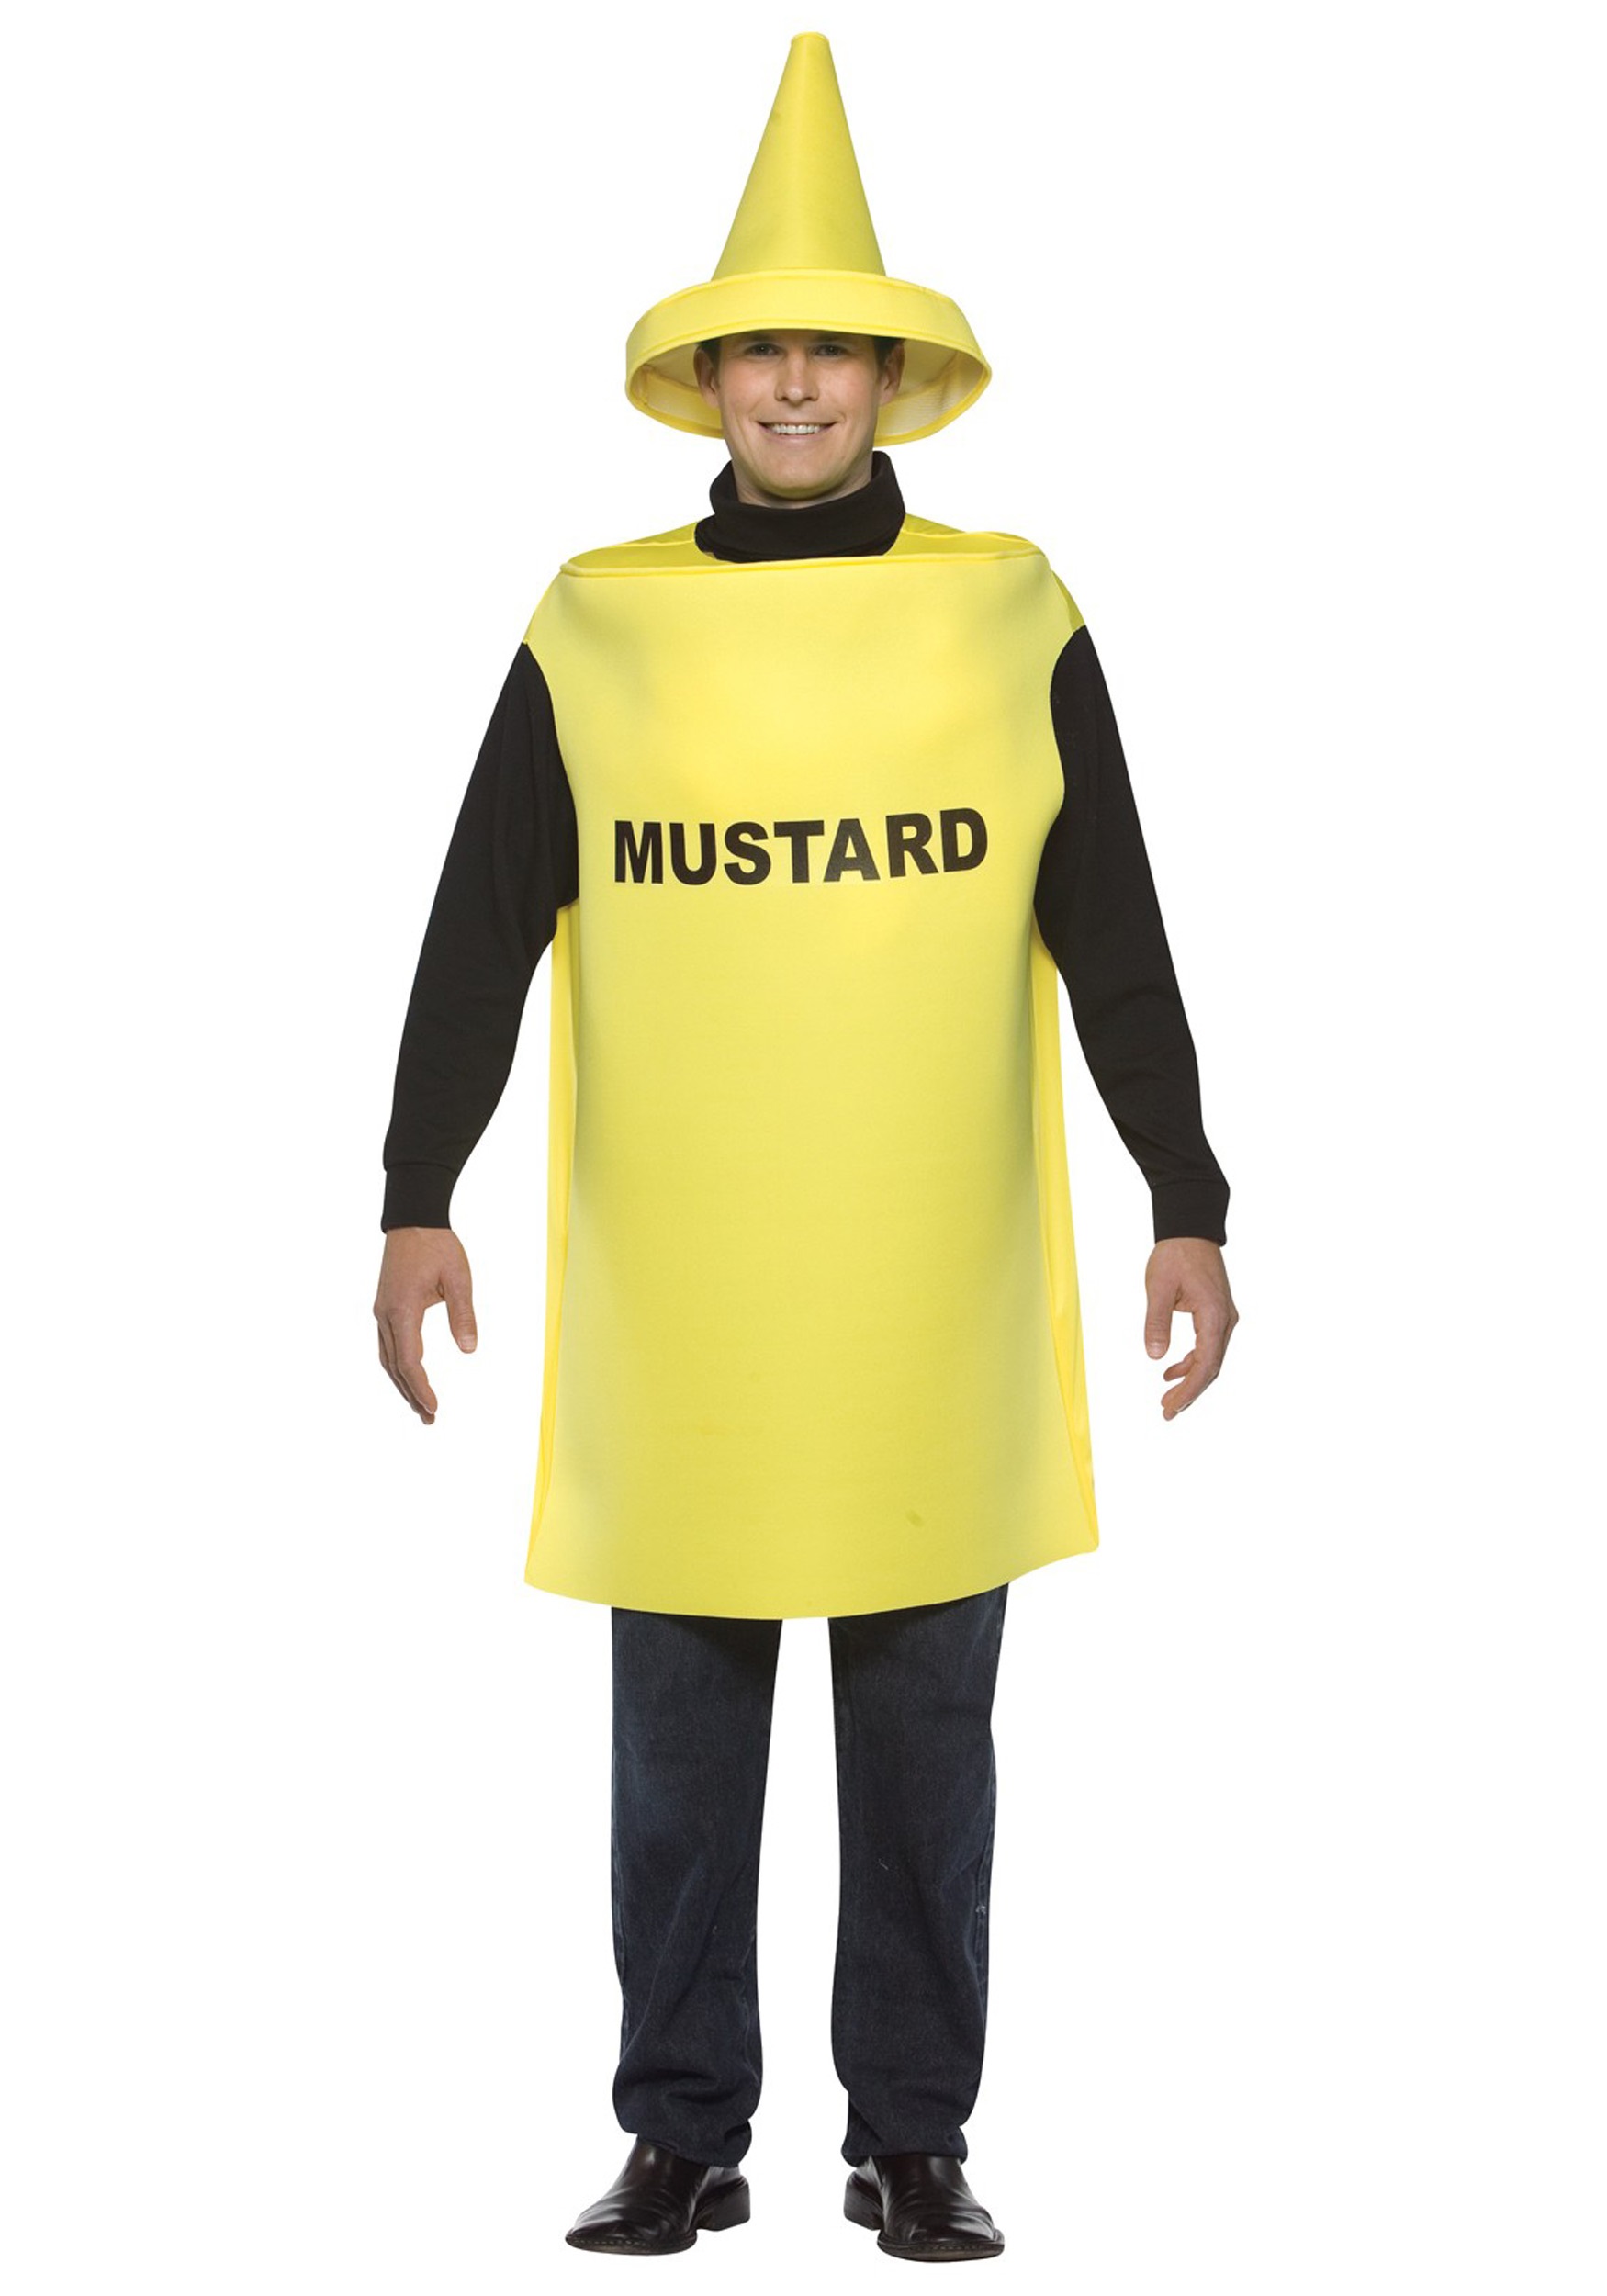 Mustard Adult Fancy Dress Costume